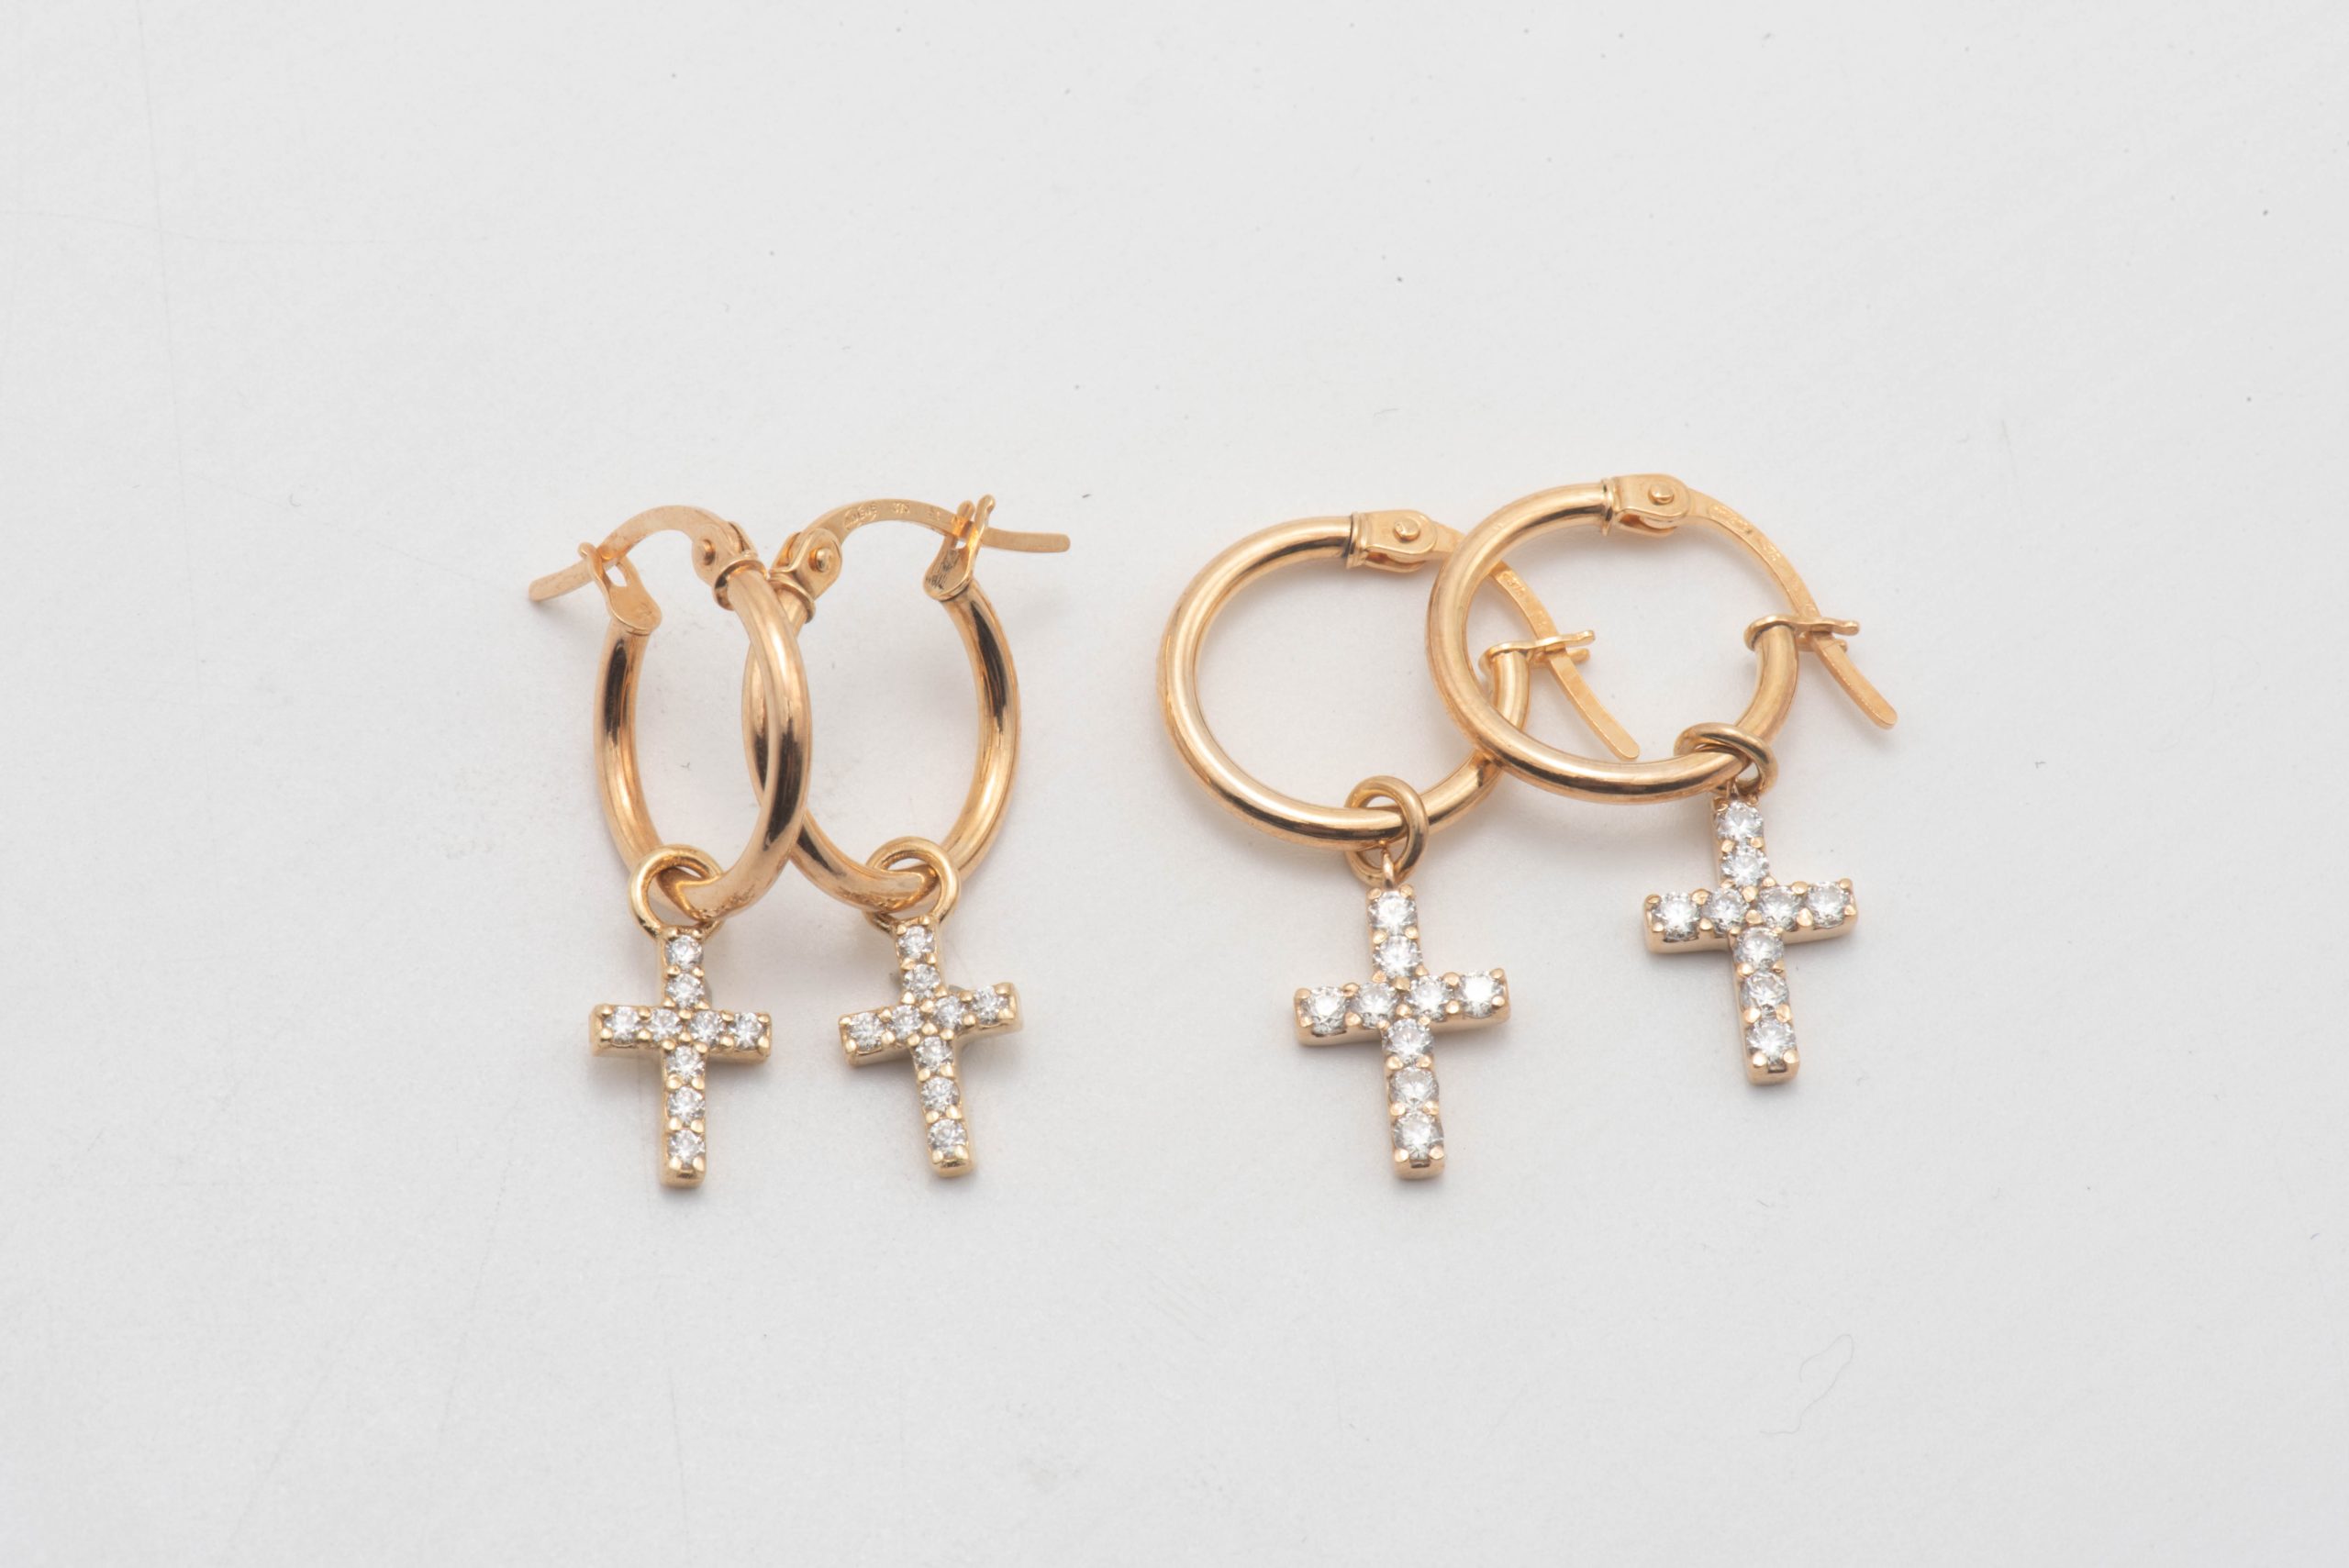 9ct Gold Cross Moissanite earrings – Karlien van Jaarsveld Collection